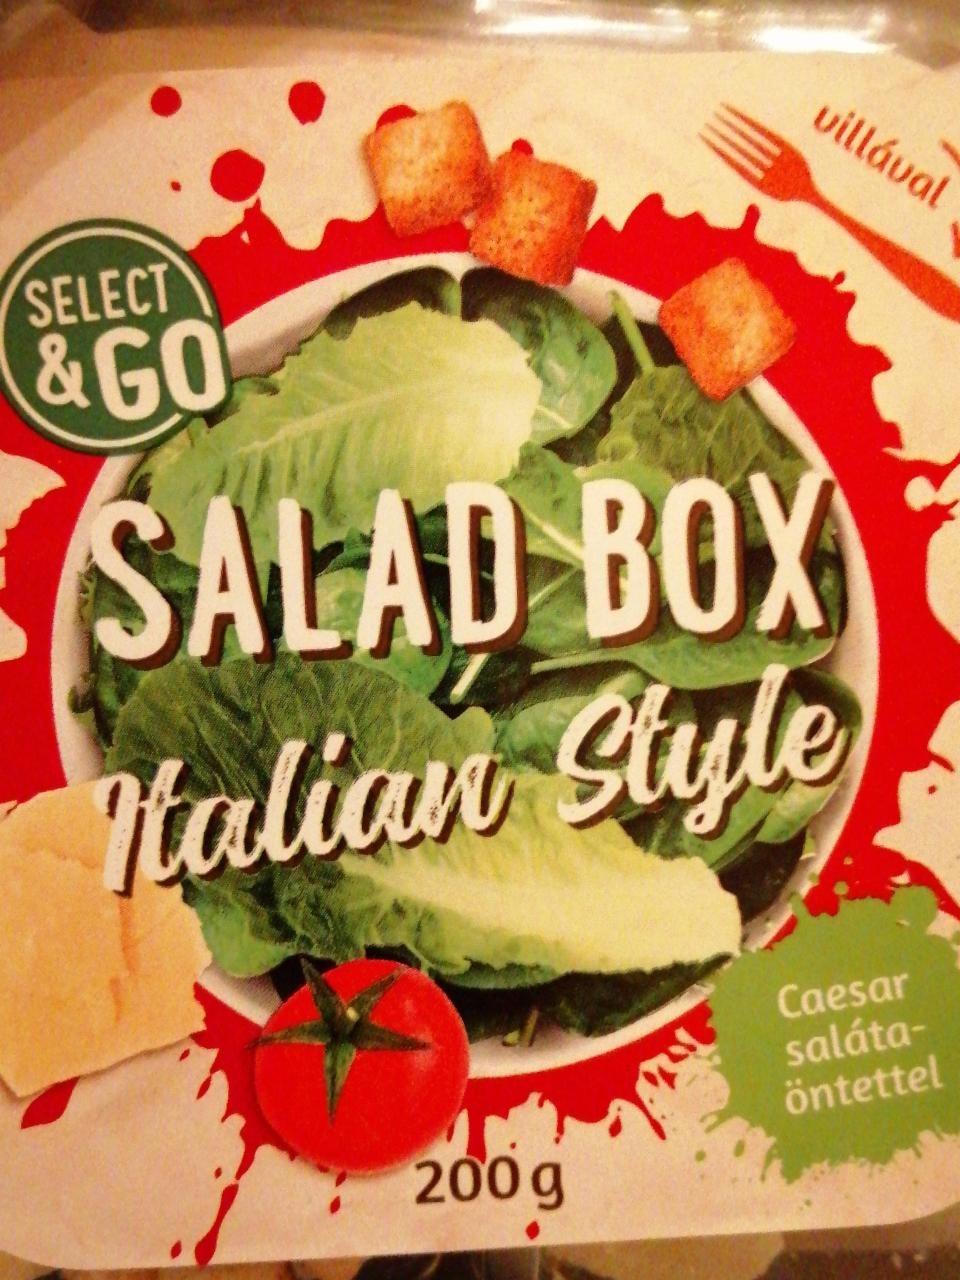 Képek - Saláta box Italian style cézár öntettel Select&go